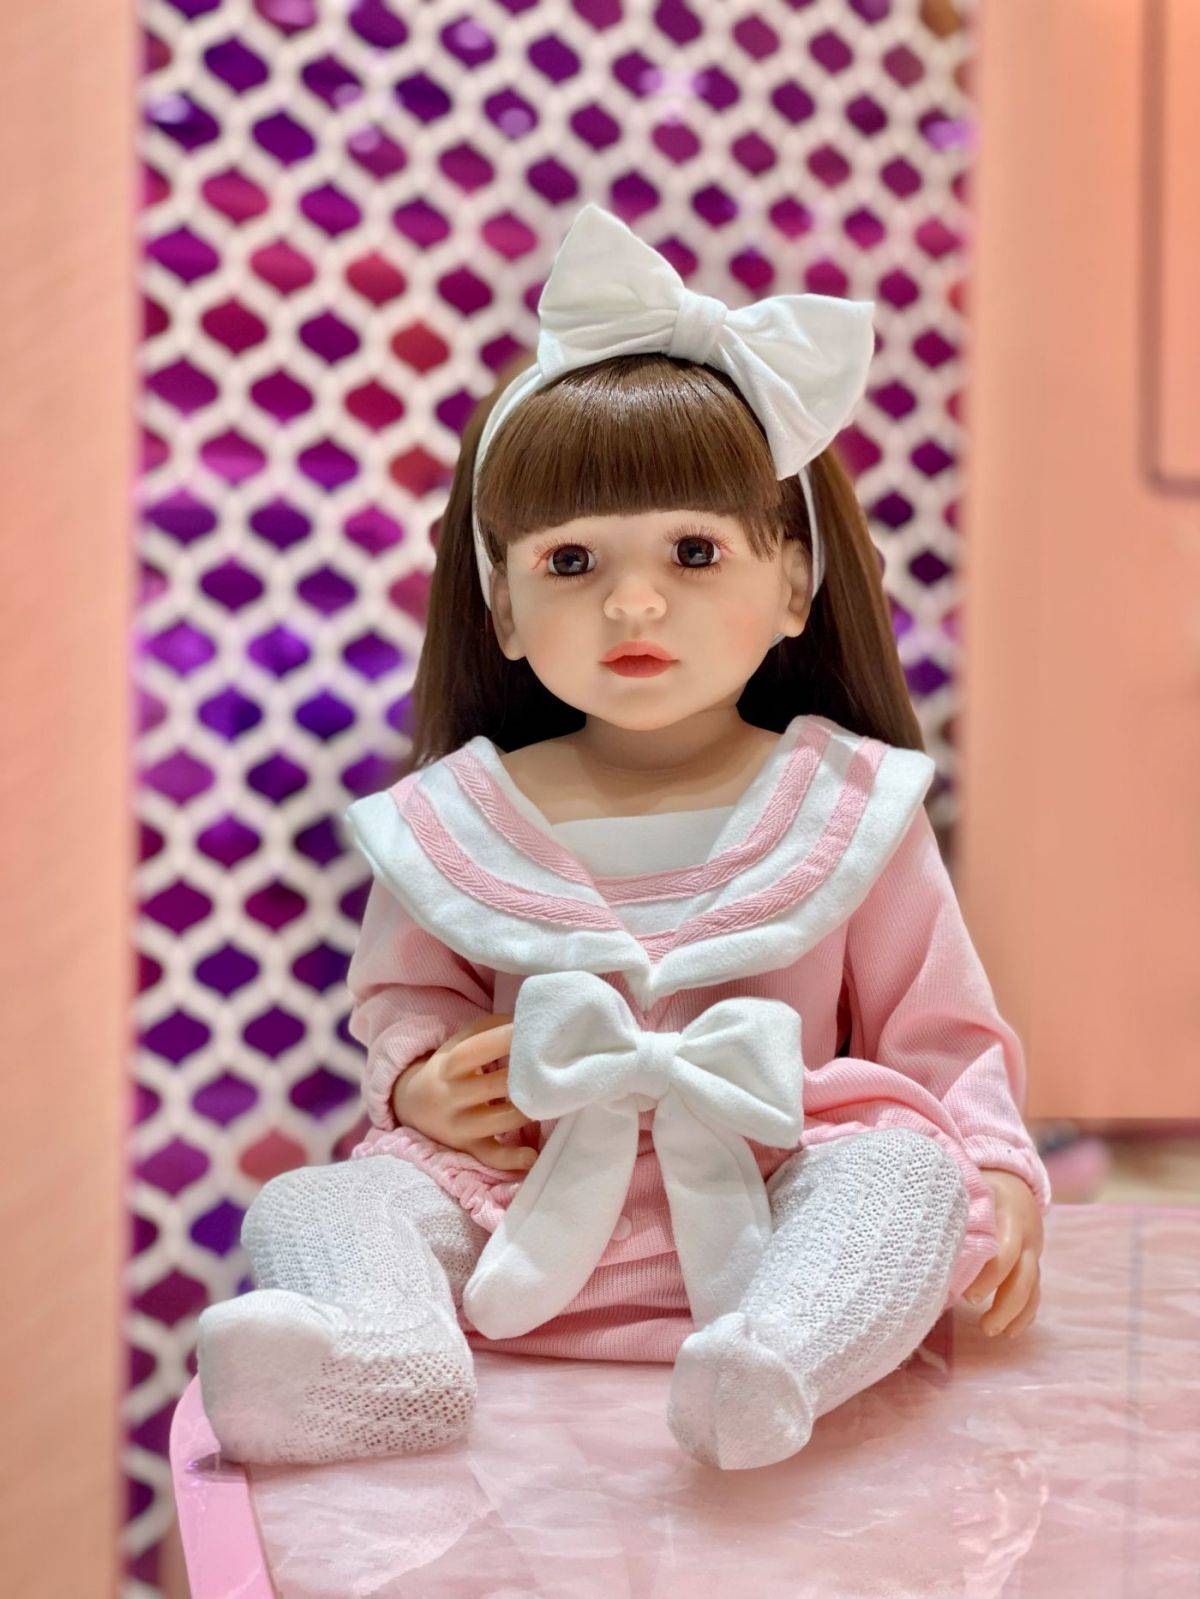 Reborn Baby Dolls Silicone Cute Soft Babies Doll Fashion Bebe Reborn Dolls 55cm Baby Toys for Girls (10)